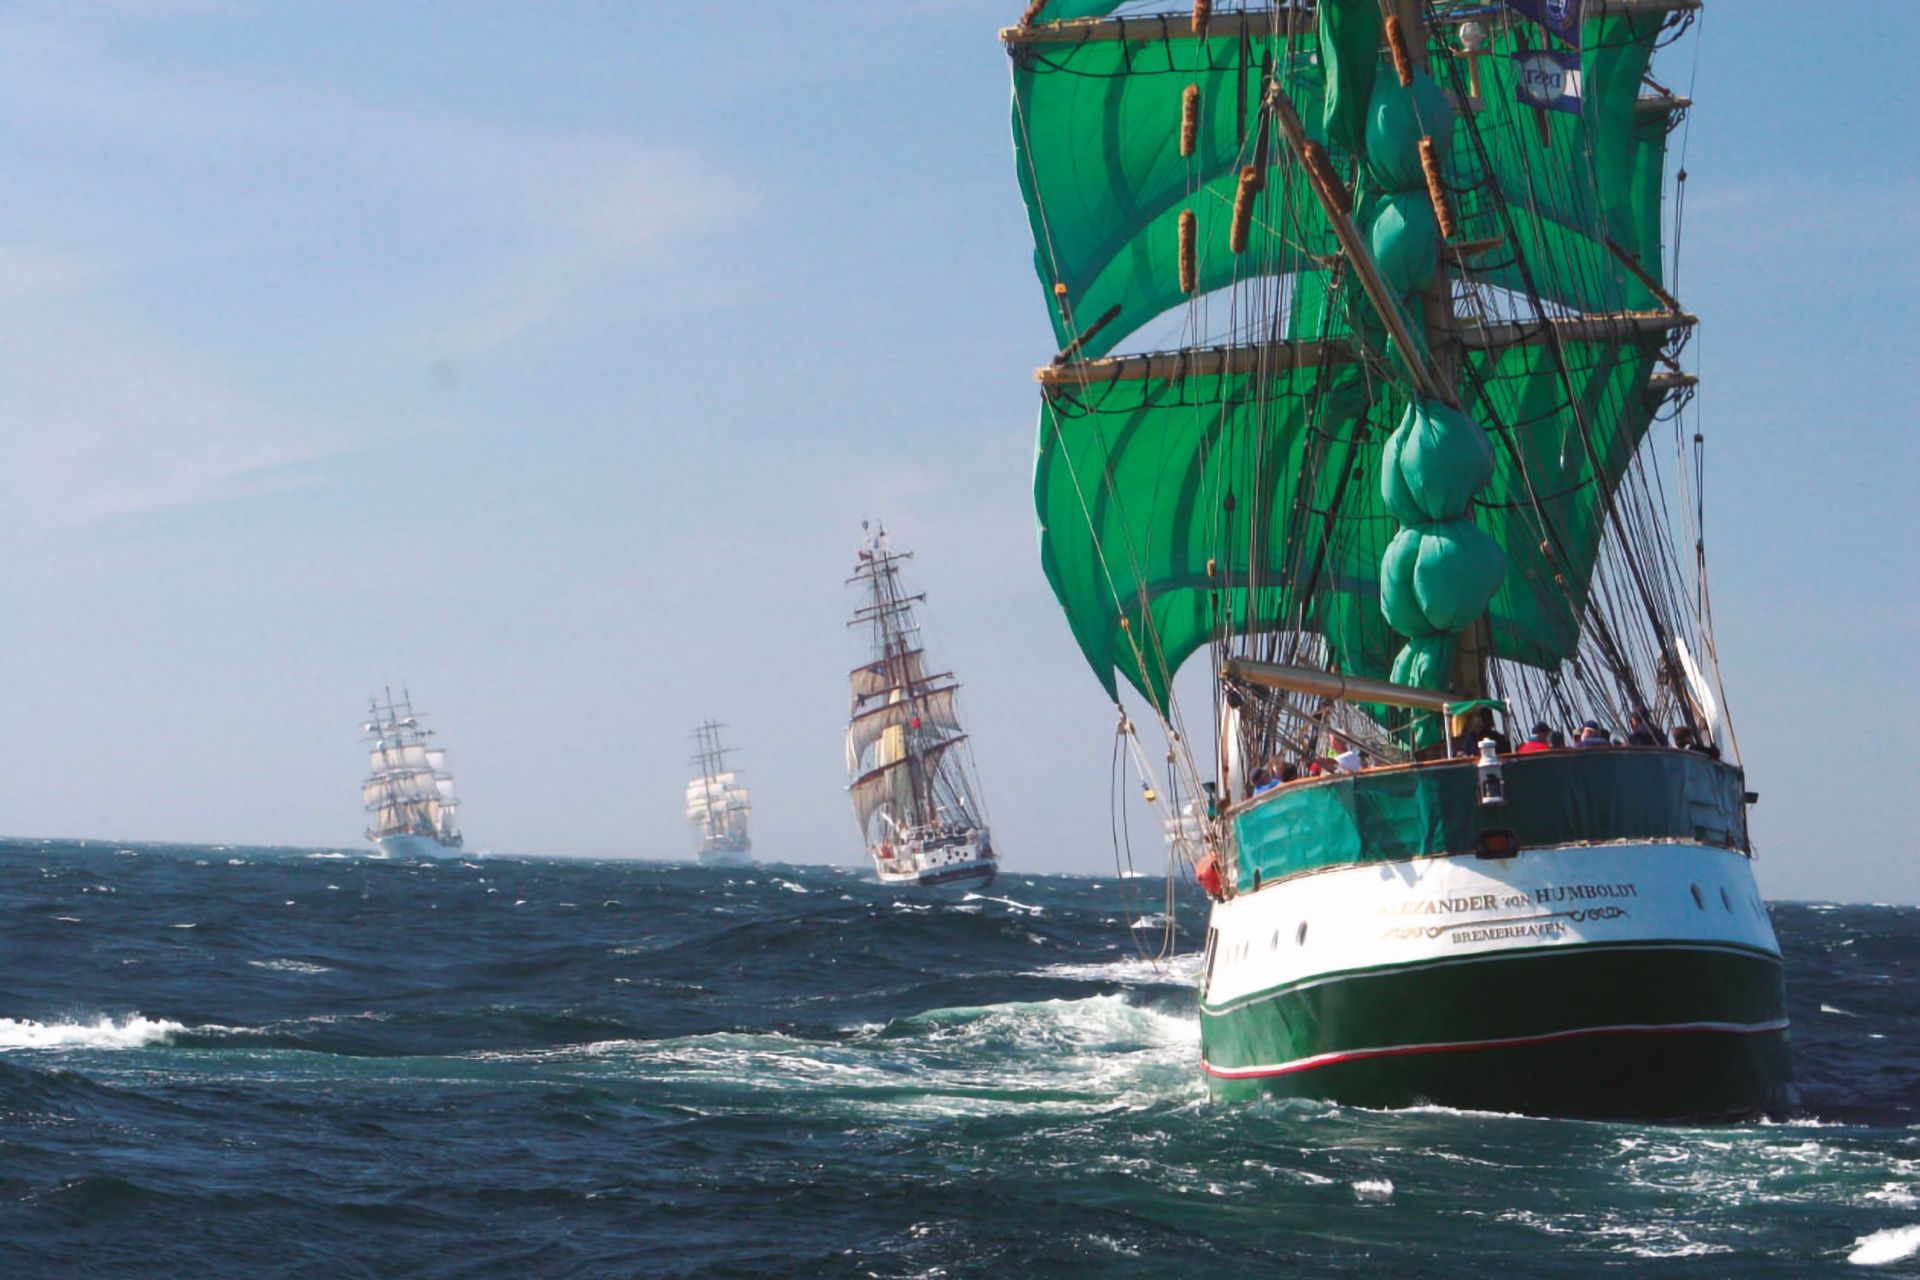 Genova ospita le "Tall Ships": sei grandi velieri visitabili alla Marina di Sestri Ponente